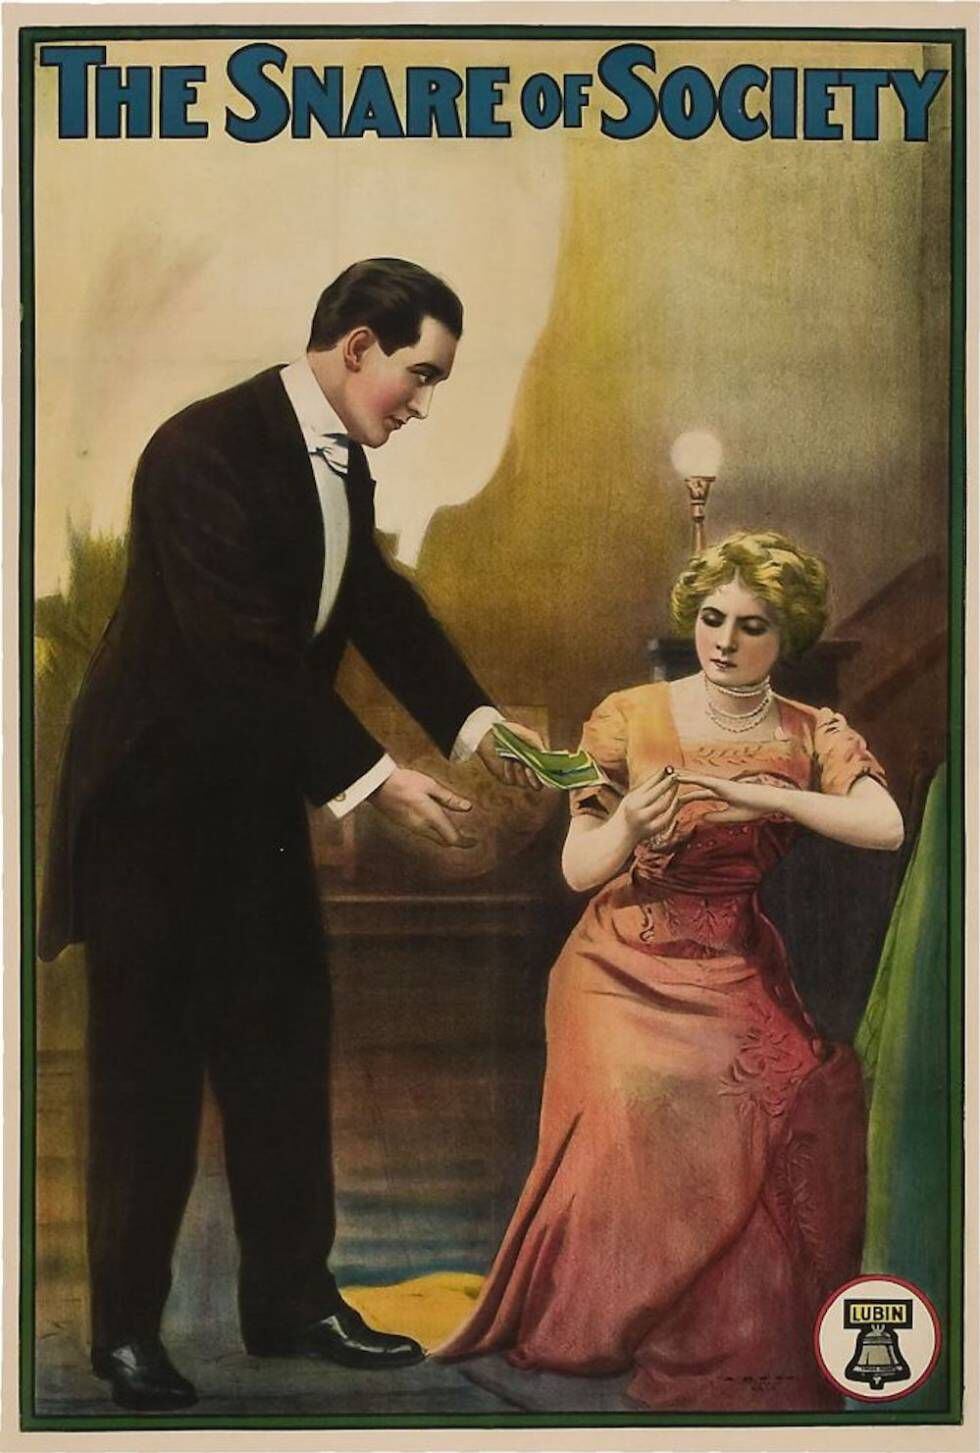 Cartel de 'The snare of society', película muda que Florence Lawrence protagonizó en 1911 para la productora Lubin.